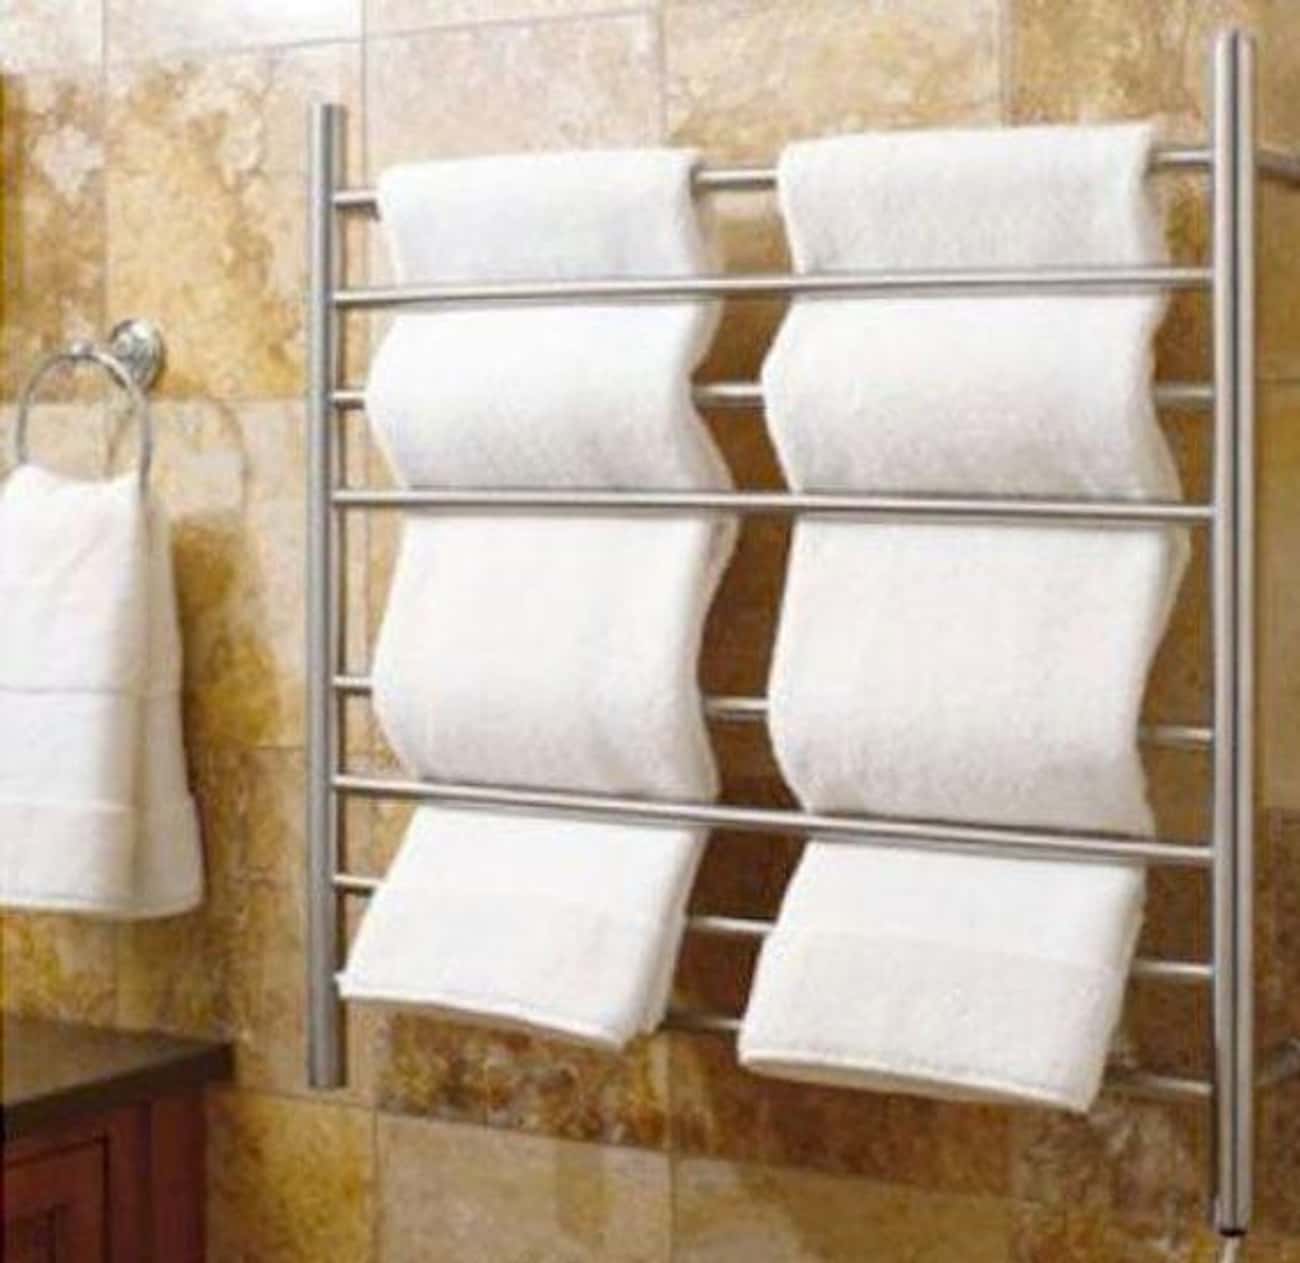 Сушилка для полотенец настенная. Сушилка Towel Warmer. Towel Rack сушилка для белья. Сушилка для полотенец в ванную. Сушилка для полотенец в ванную настенная.